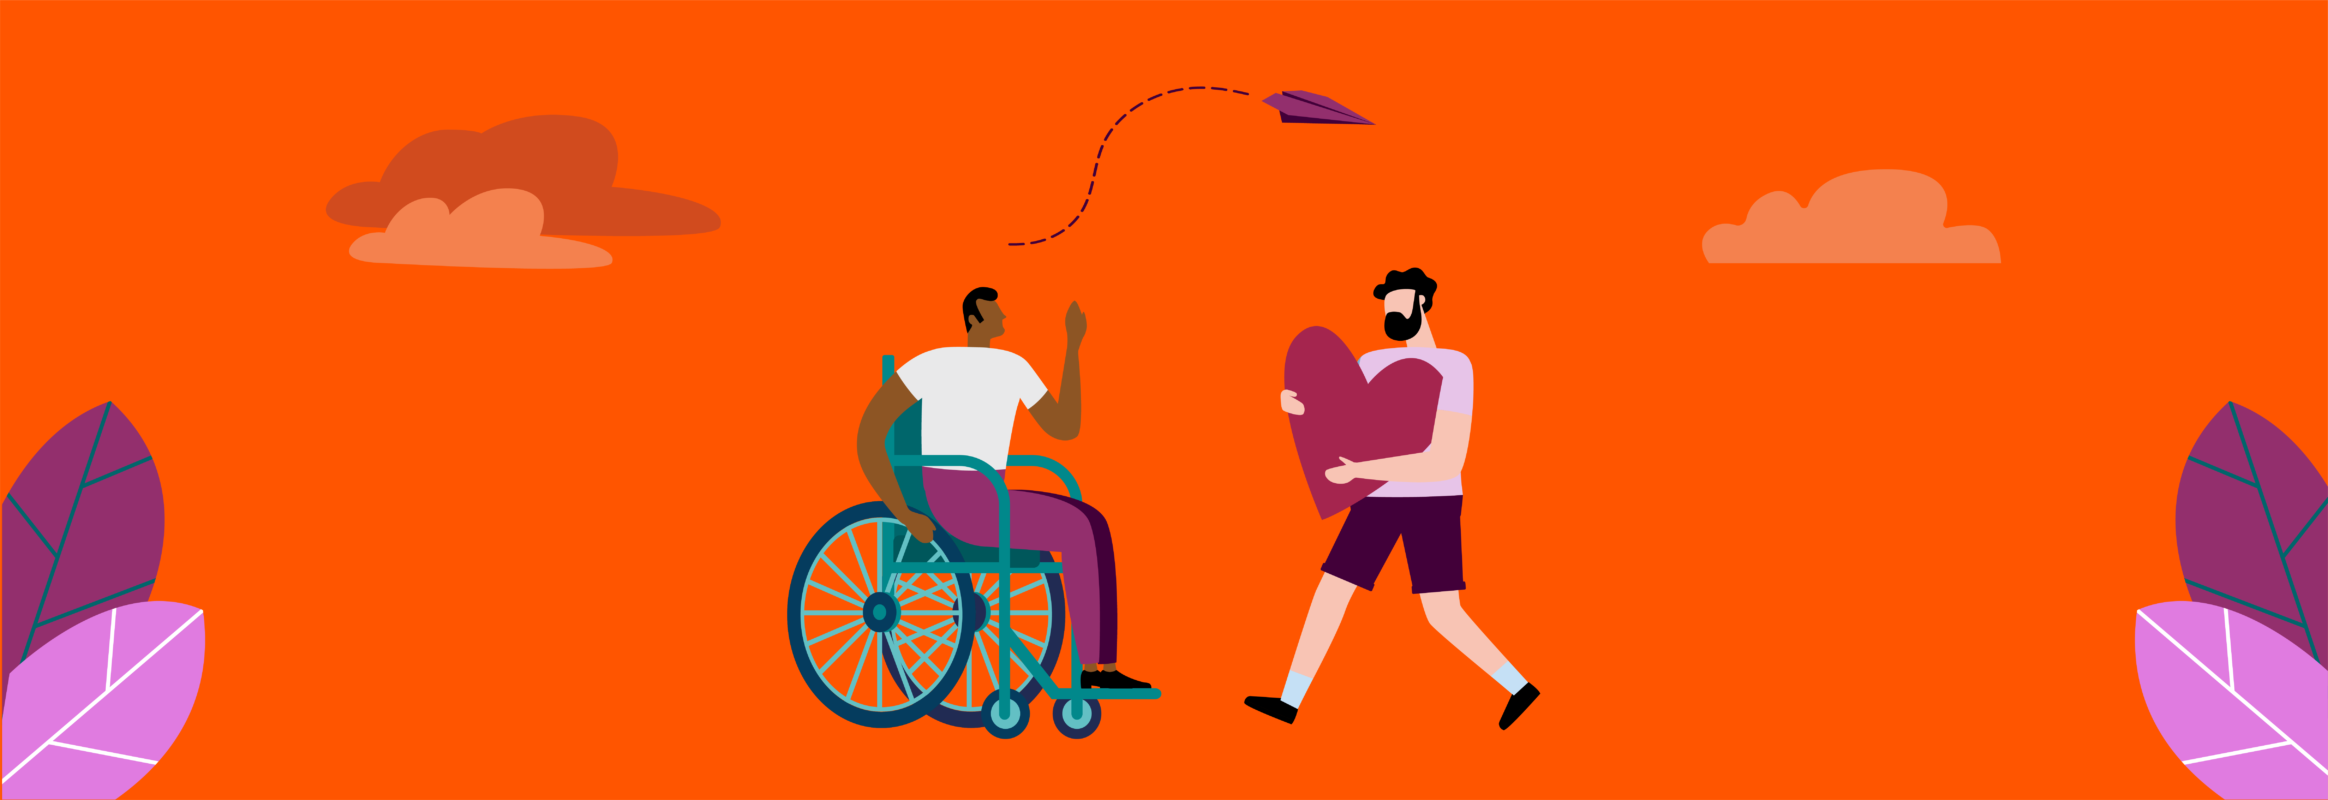 Illustratie met iemand in een rolstoel en een staand iemand die een symbool vasthoudt van een een hart, ze kijken naar elkaar.